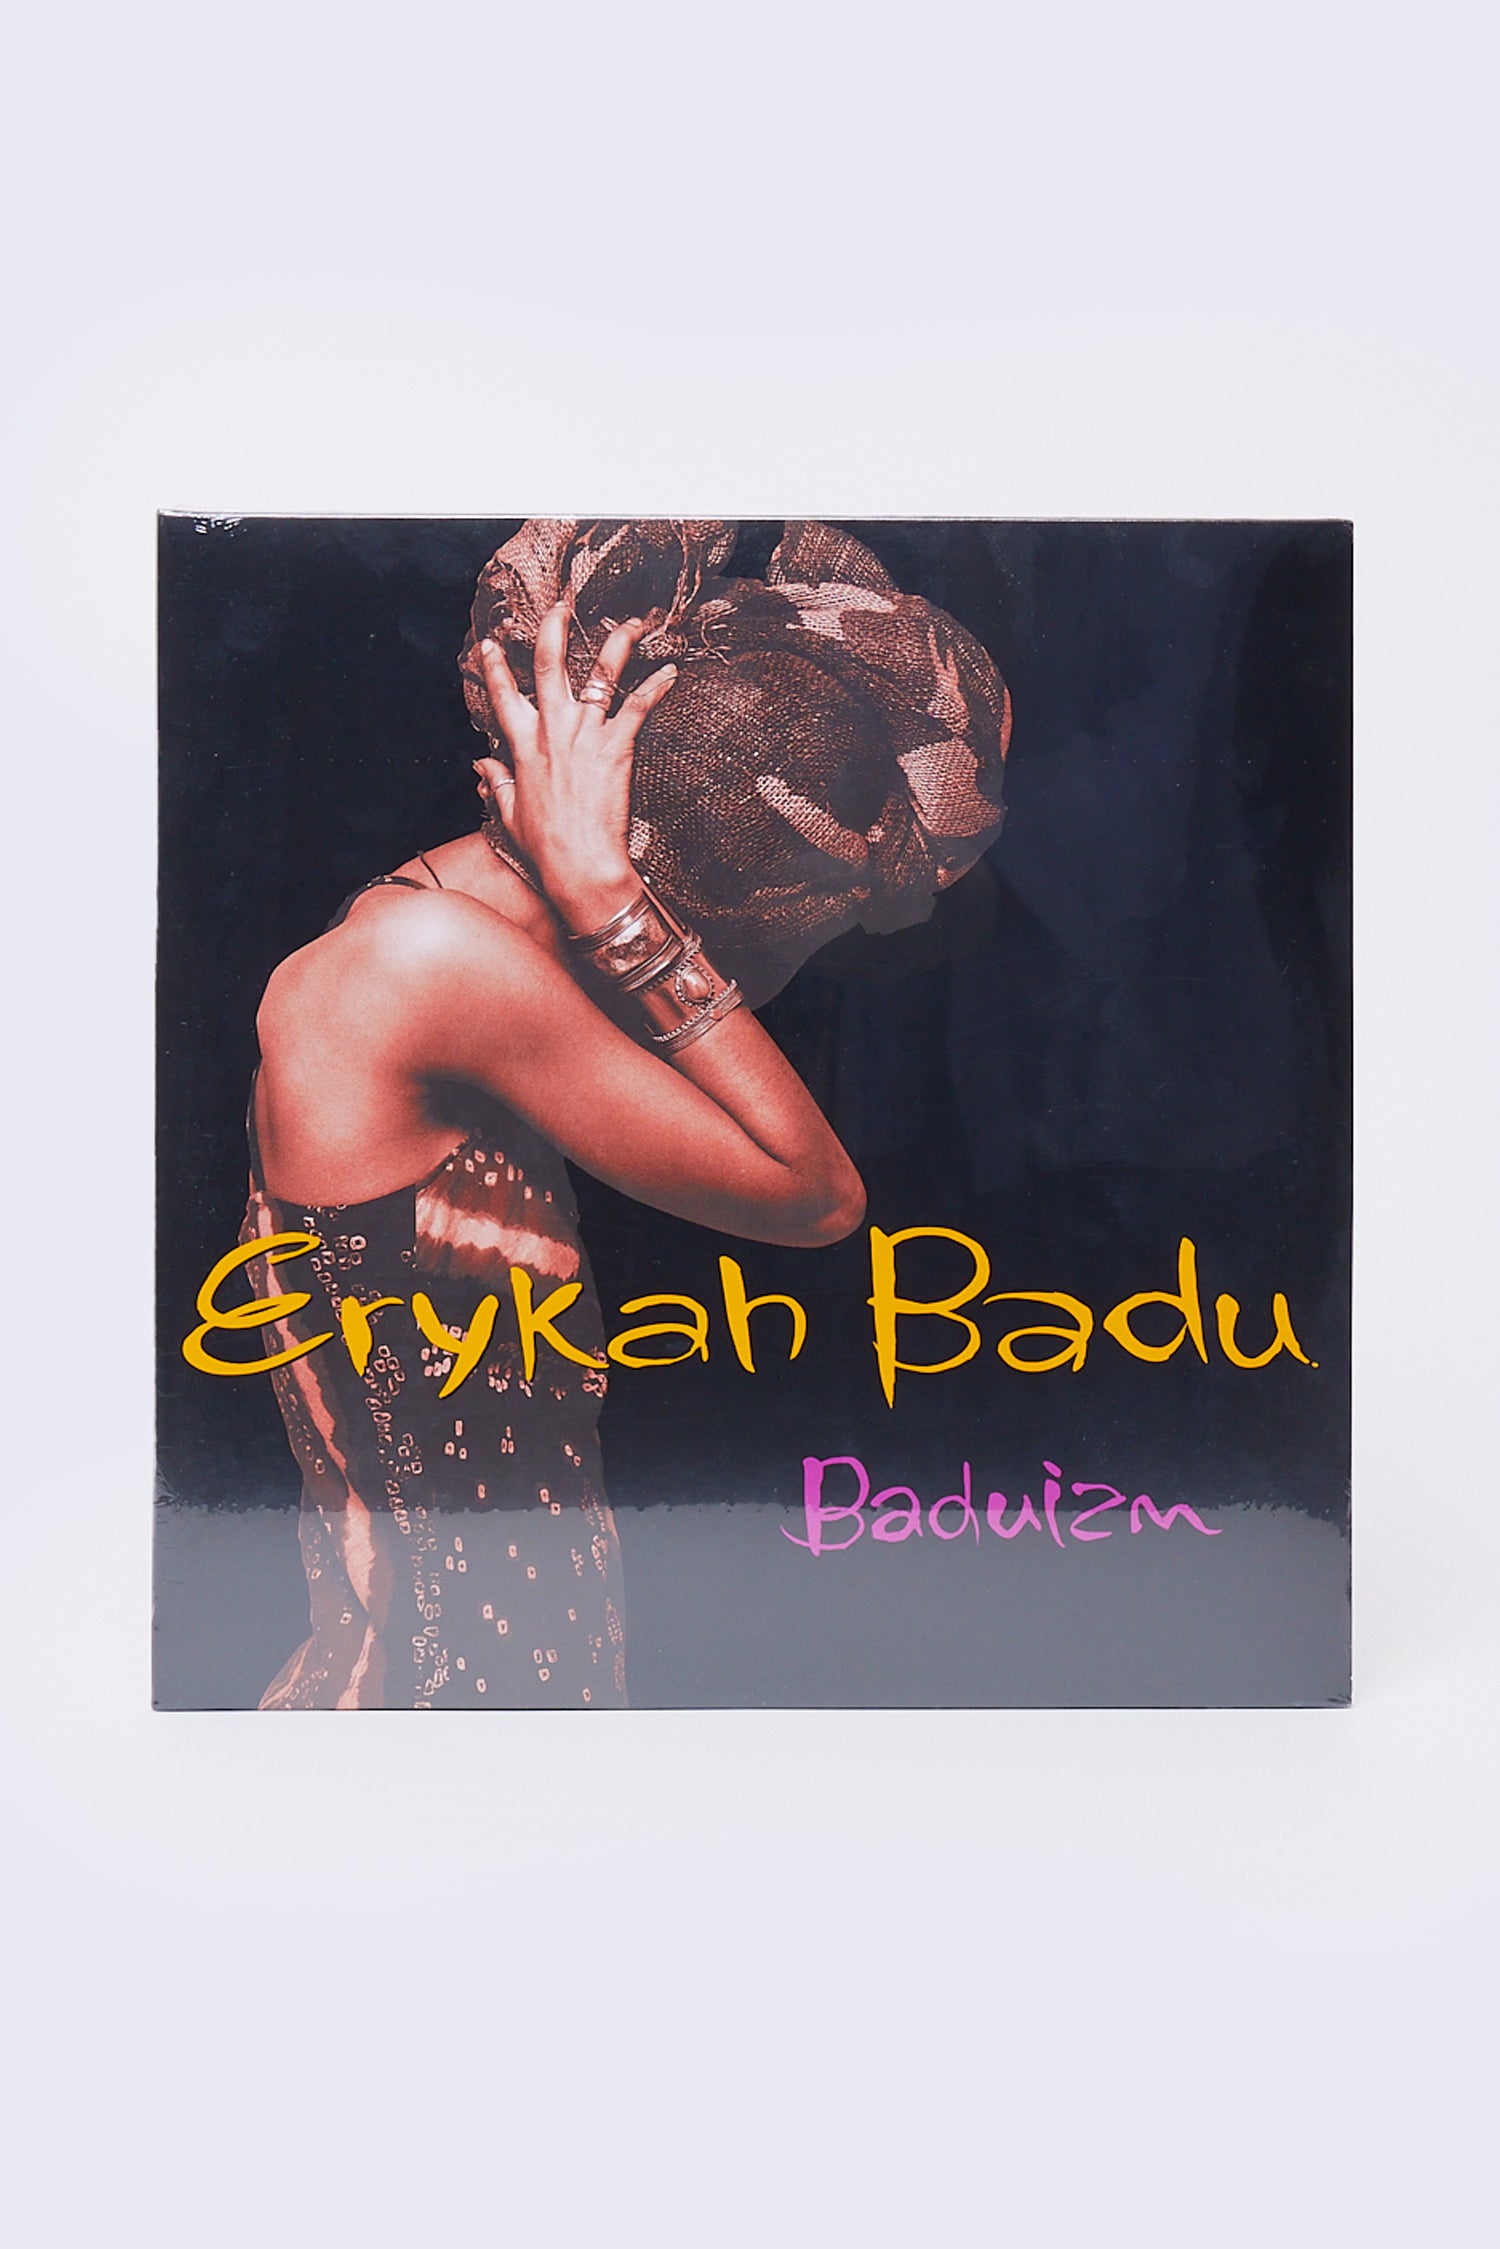 Erykah Badu - Baduizm